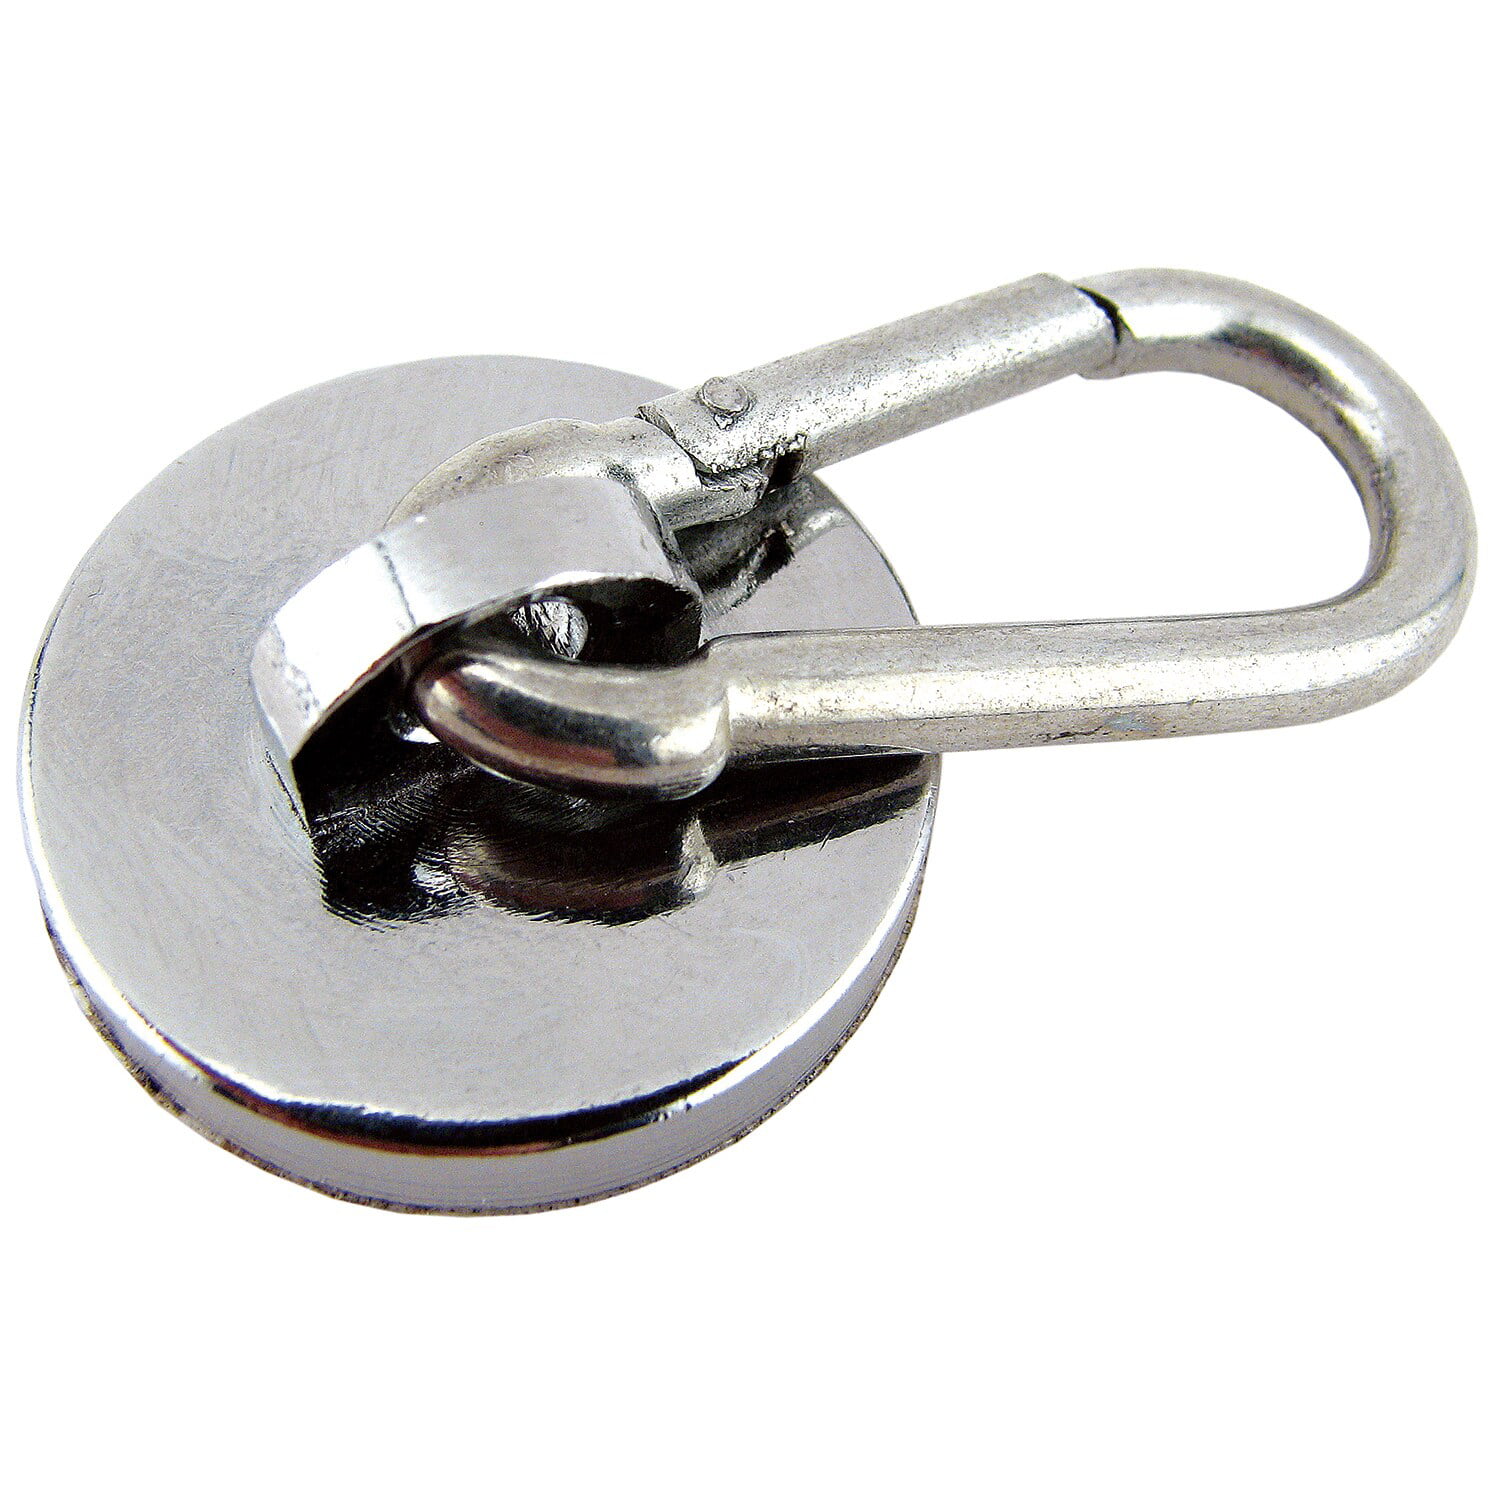 Strong Neodymium Magnet Holds Neoprene Magnet/Carabineer Hook 